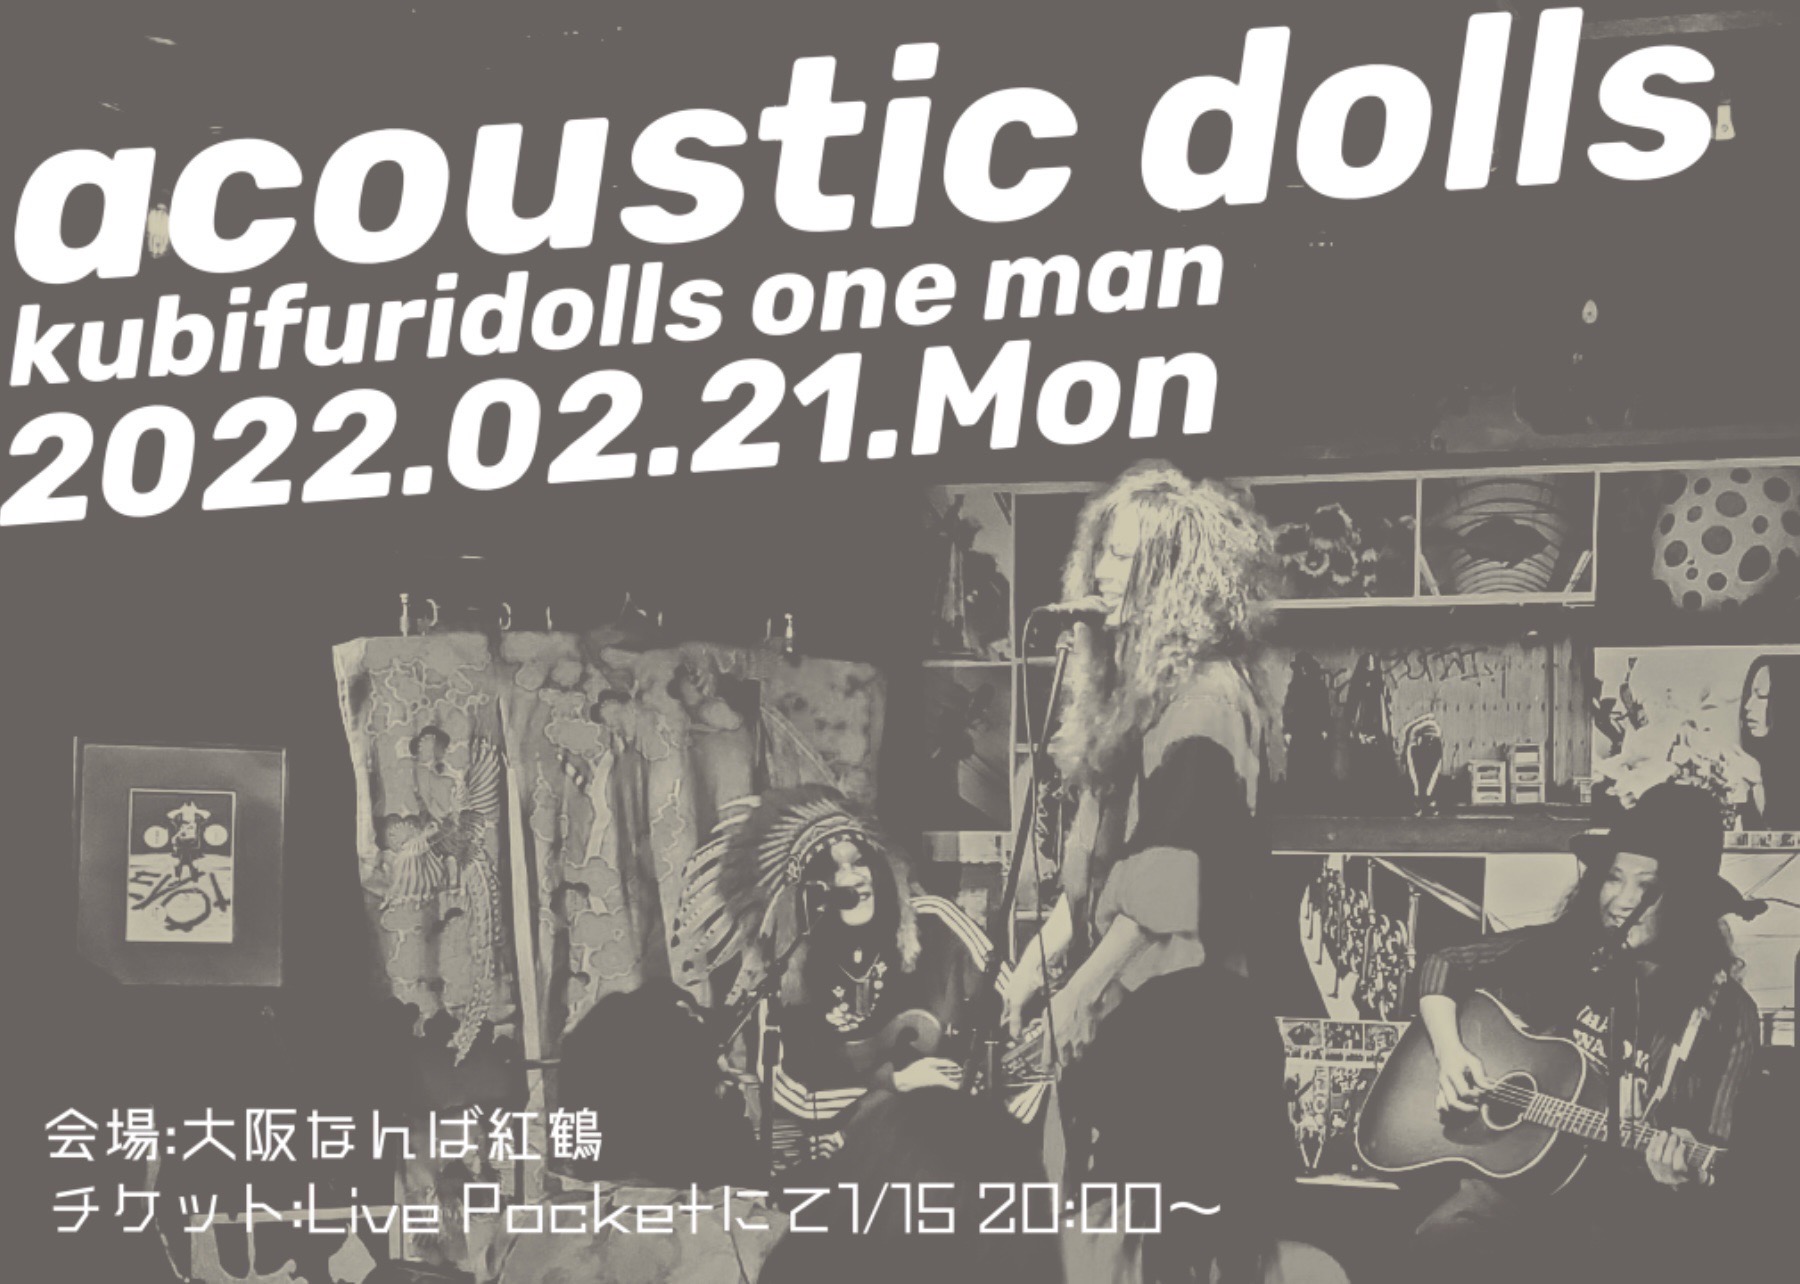 首振りDolls one-man acoustic dolls